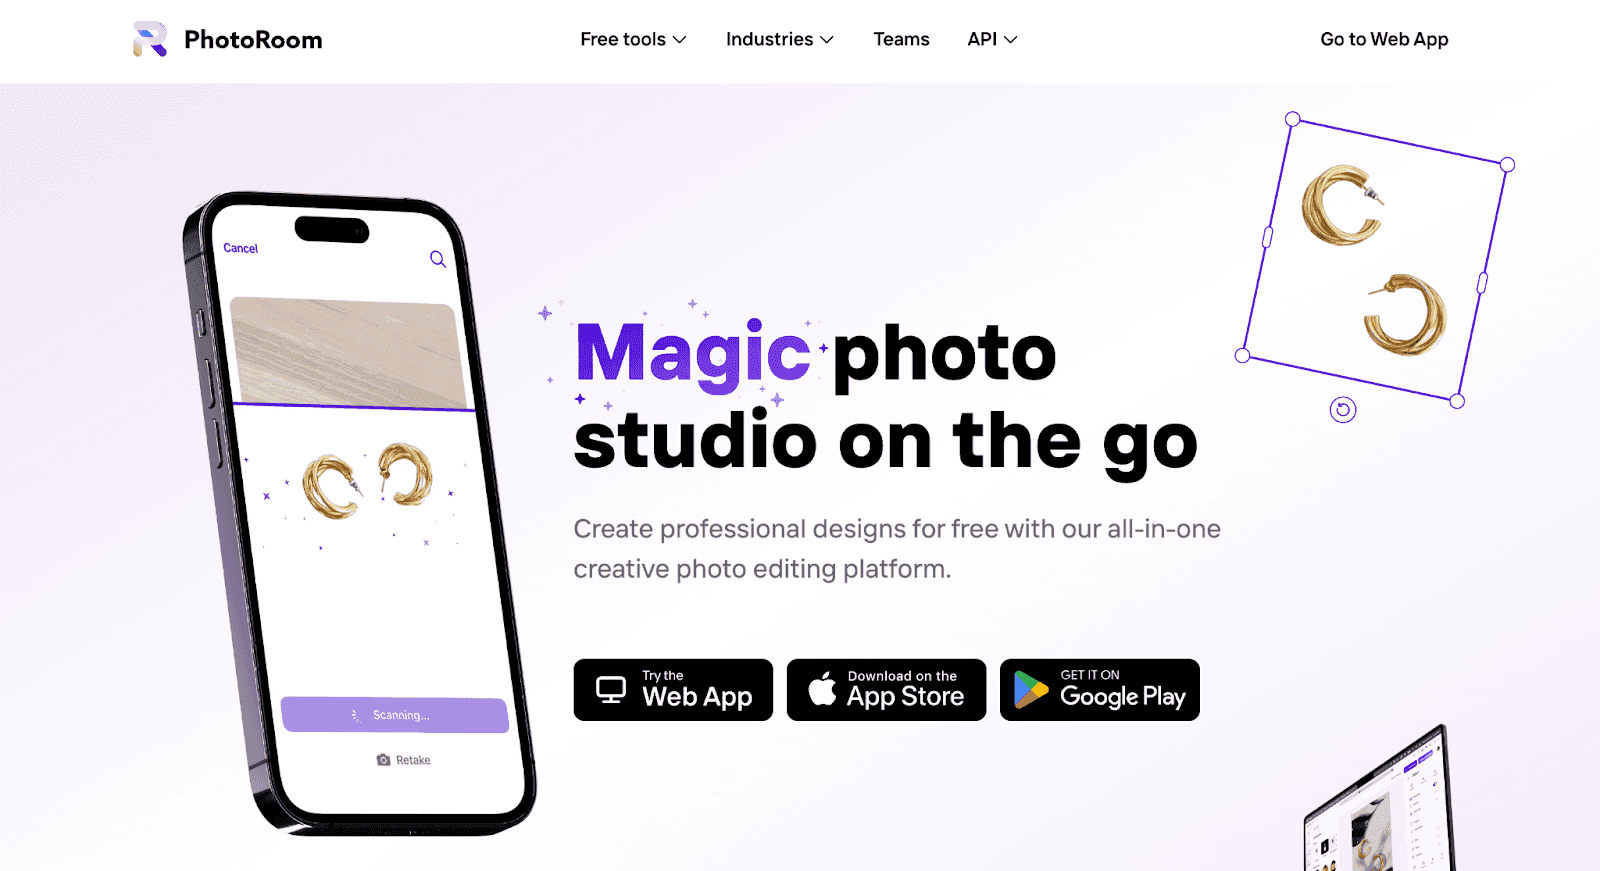 PhotoRoom website - Magic photo studio on the go